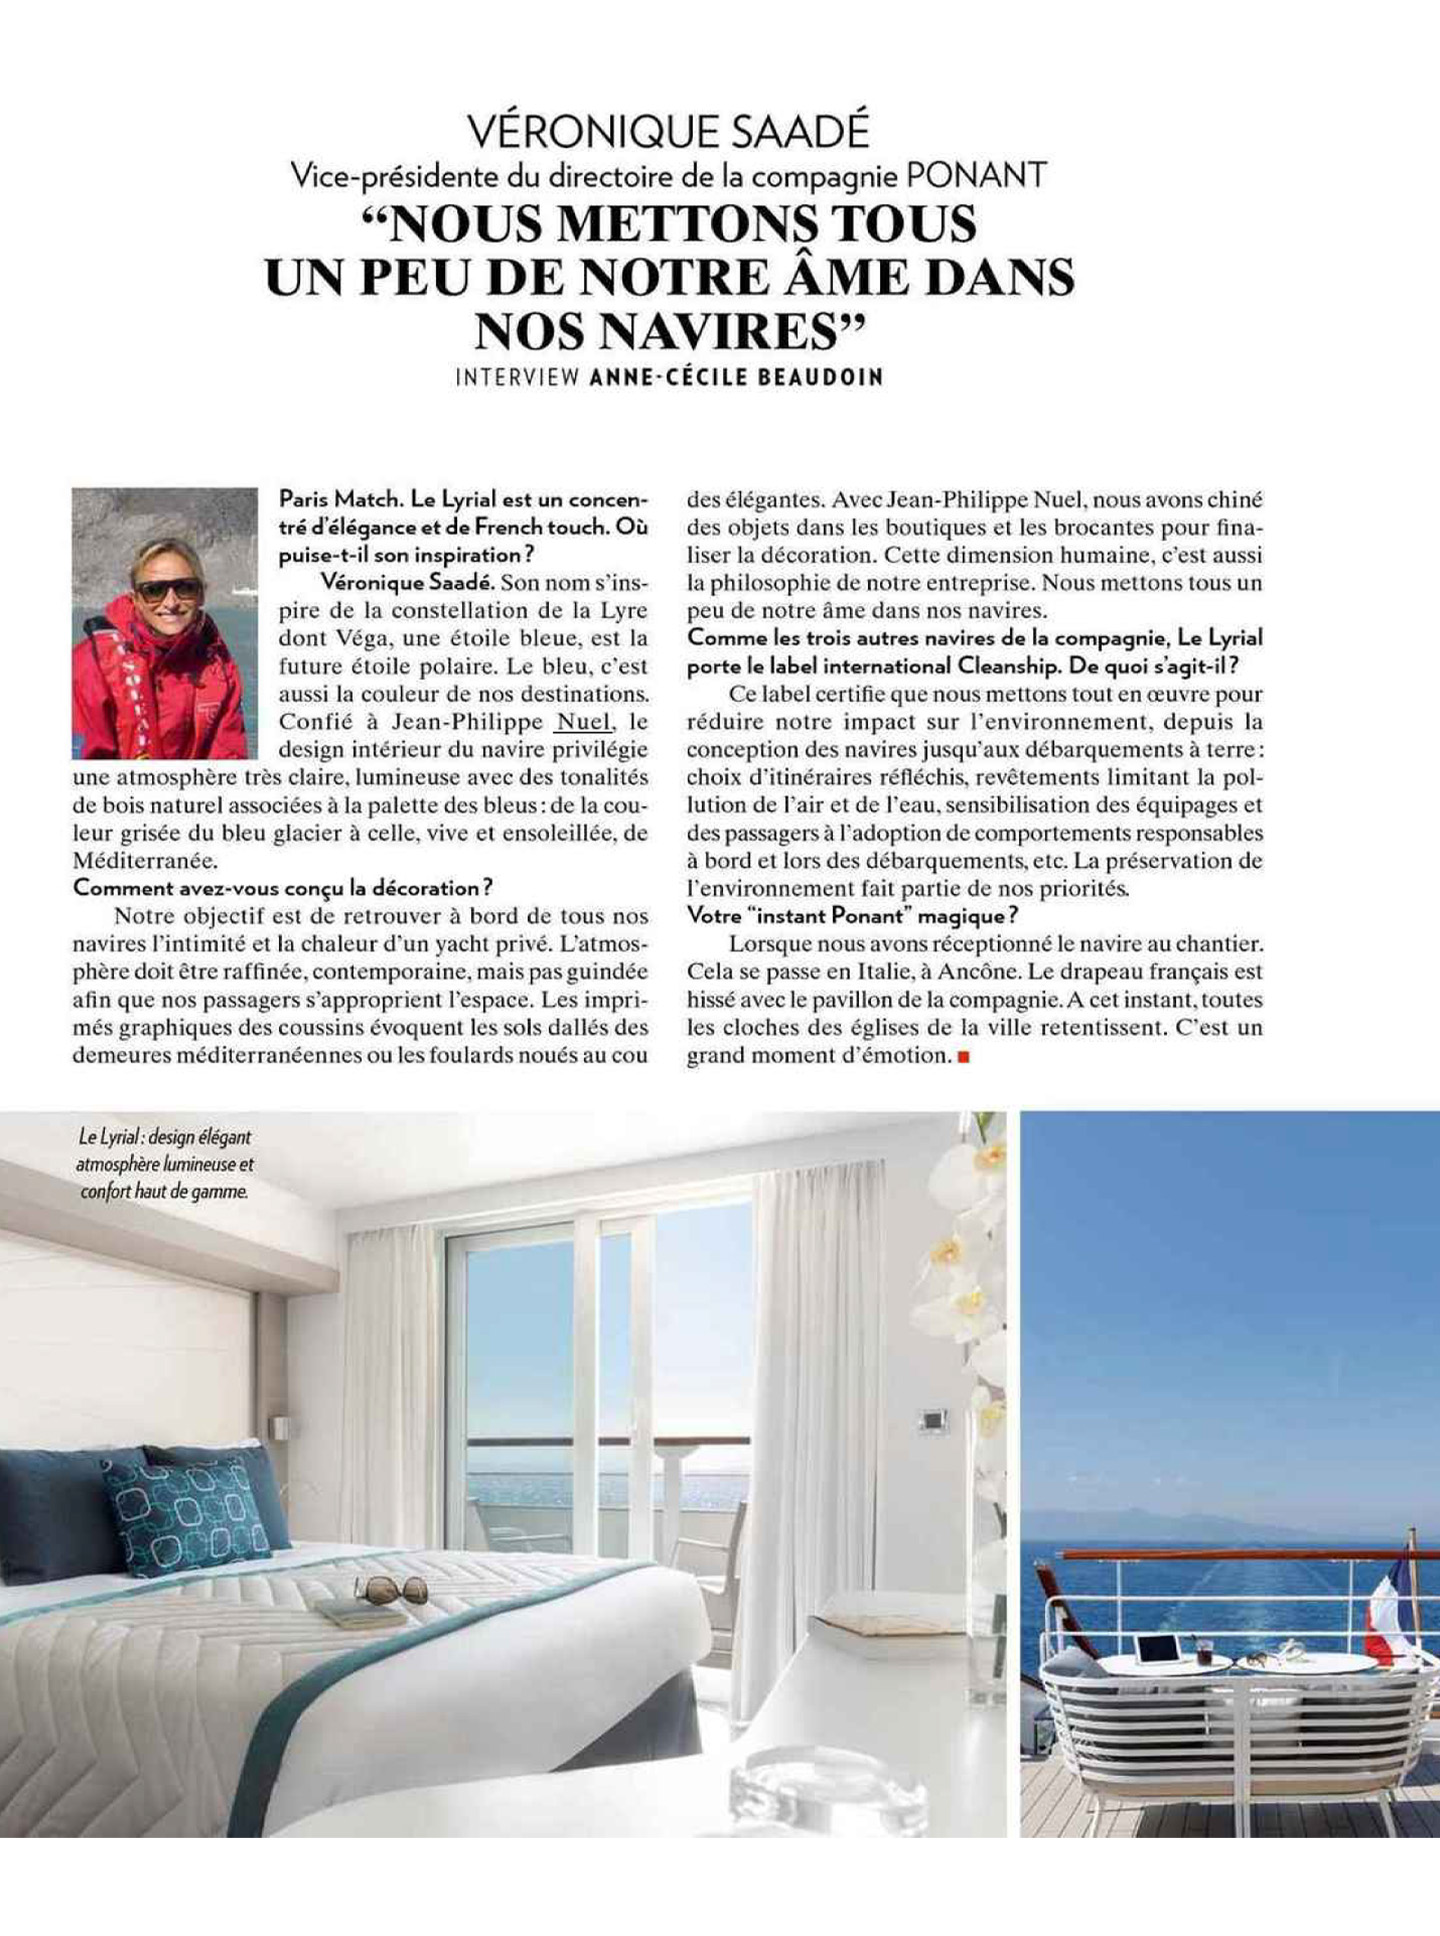 article sur le lyrial de ponant dans le magazine paris match, hôtel de luxe 5 étoiles réalisé par le studio d'architecture d'intérieur jean-philippe nuel